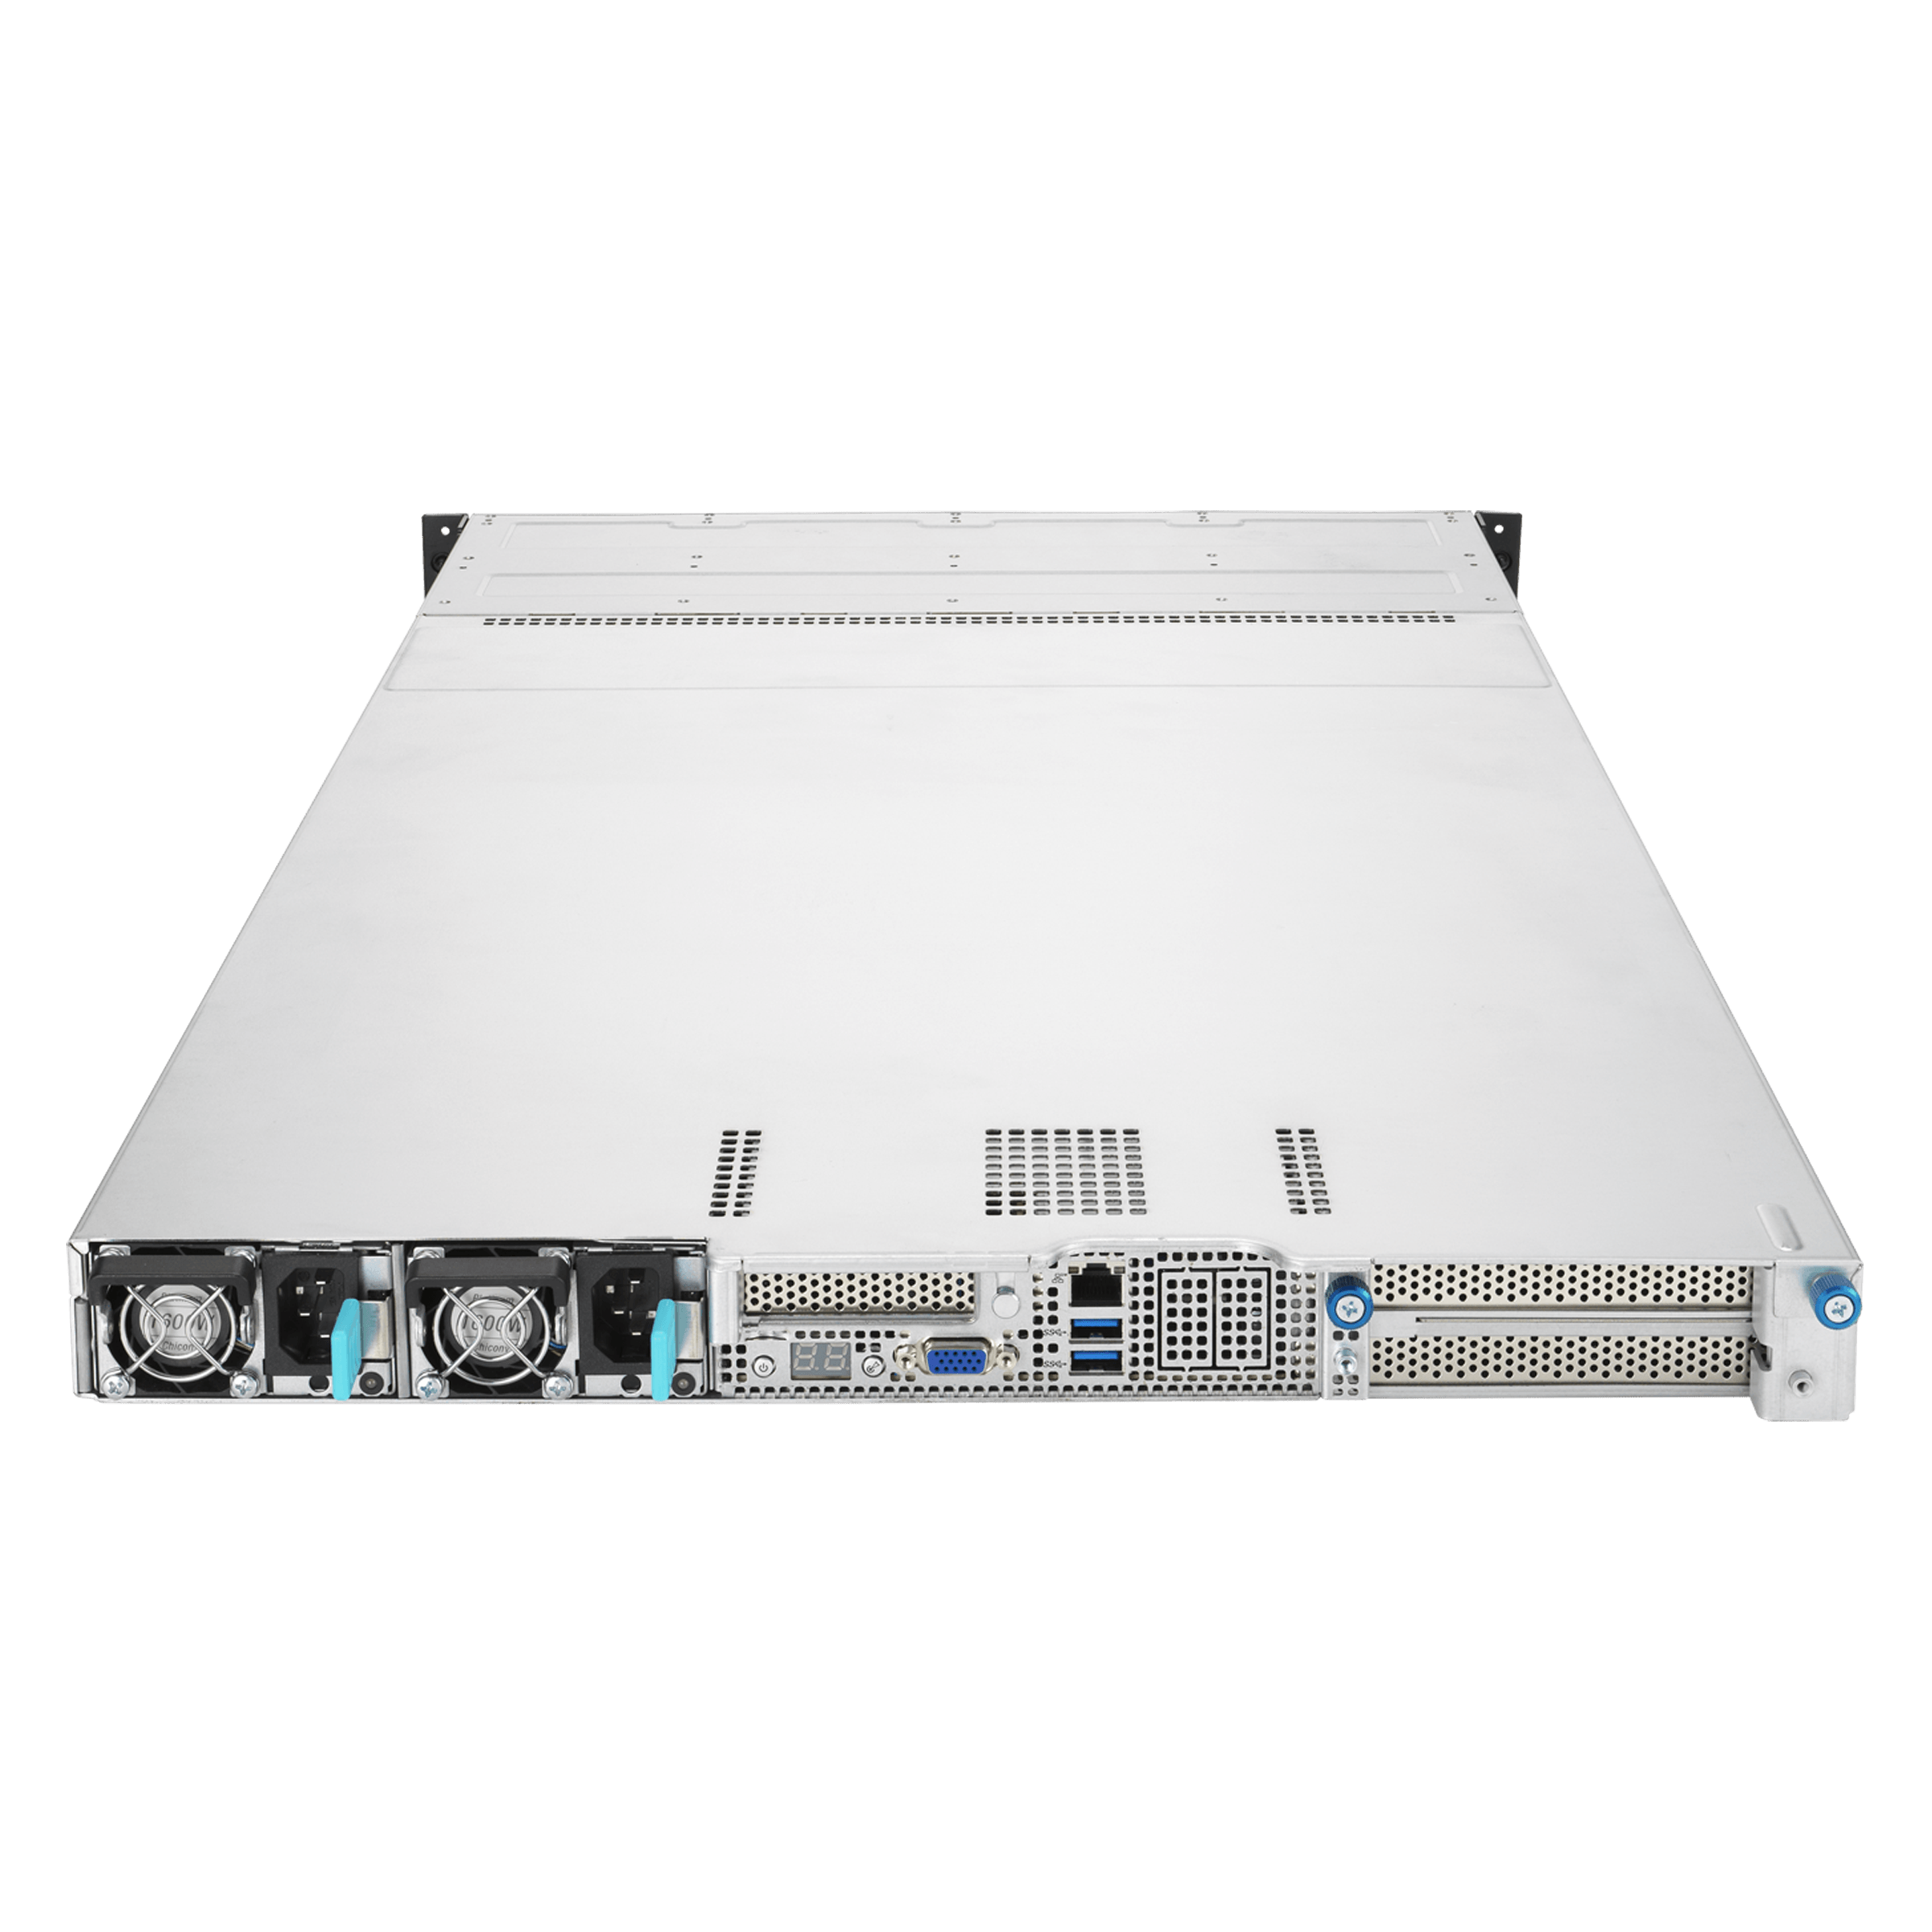 2X16GB 32GB Z10PP-D24 Z10PP-D24 only by CMS C124 E8-RS4/V2 Server E8-RS8/V2 Server Memory Ram Compatible with ASUS/ASmobile RS700 E8 Series Server